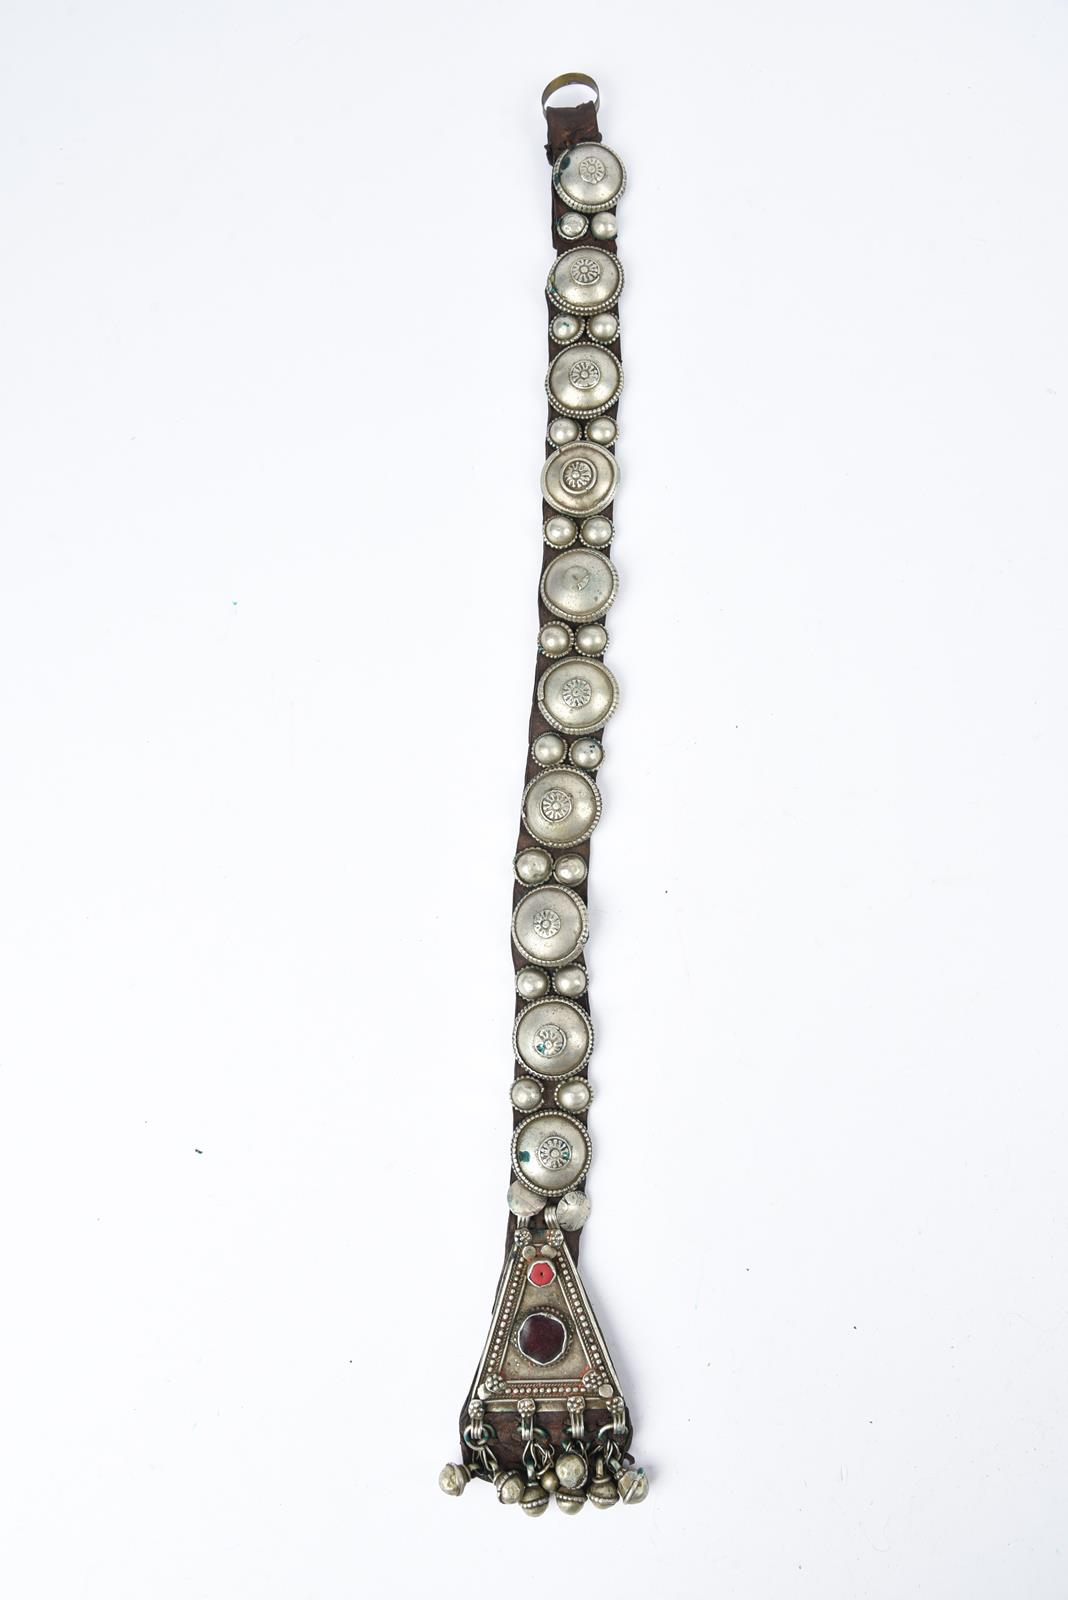 λA Bedouin amulet chest ornament cloth with numerous sewn on amulets and beads, 62cm long, and three - Bild 10 aus 27